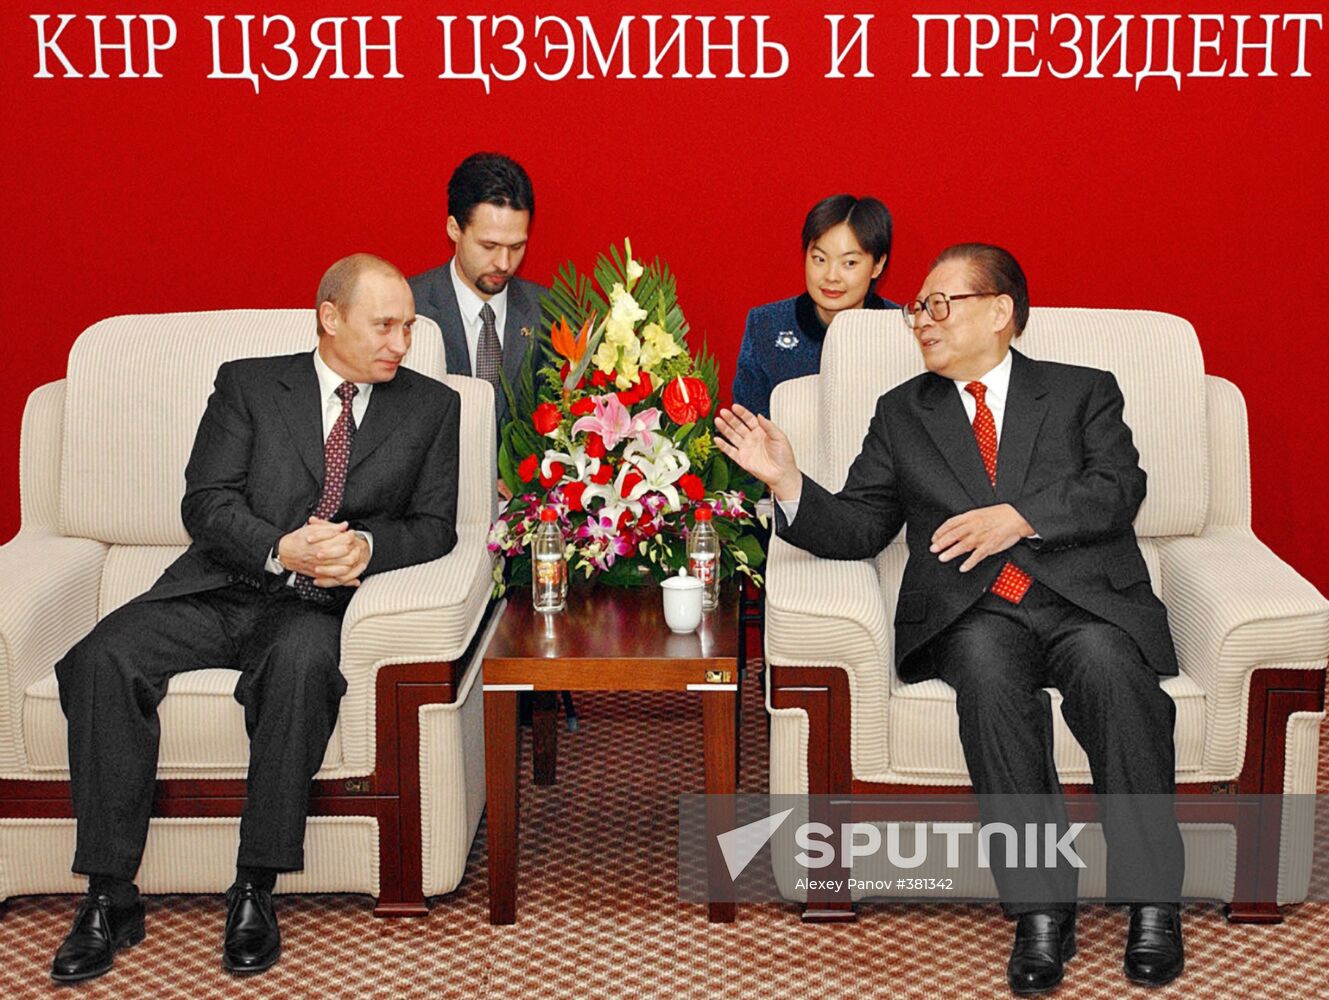 Vladimir Putin and Jiang Zemin